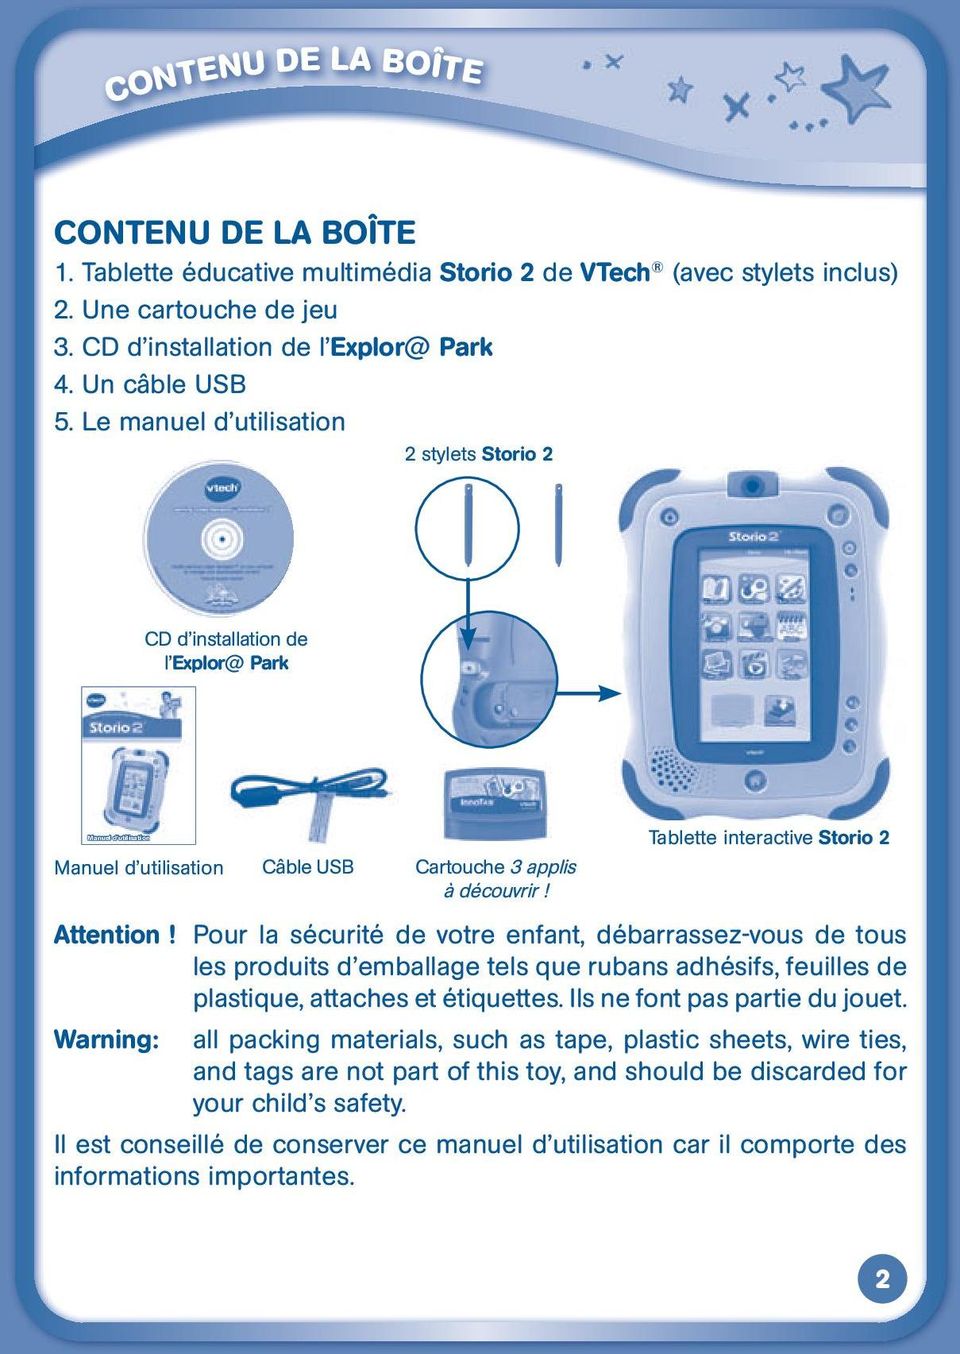 Tablette interactive Storio 2 Attention! Pour la sécurité de votre enfant, débarrassez-vous de tous les produits d emballage tels que rubans adhésifs, feuilles de plastique, attaches et étiquettes.